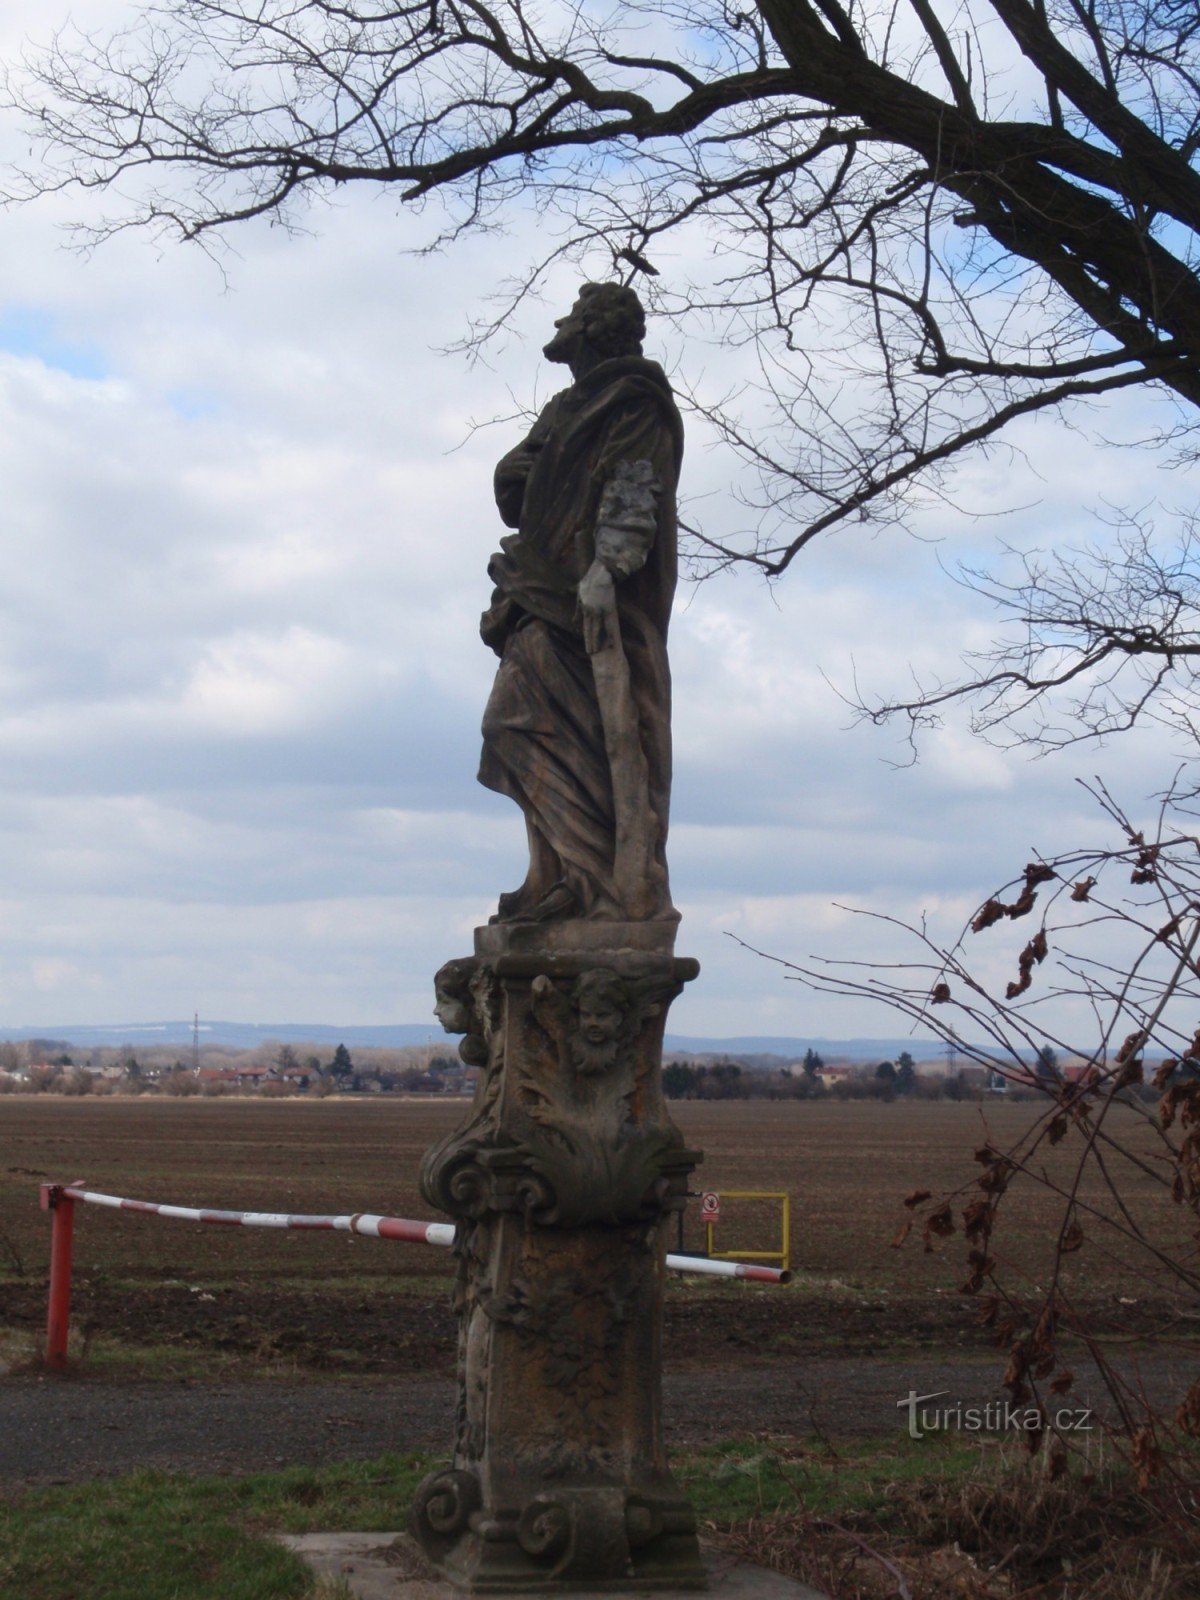 Estátua de S. Judy Tadeáše perto da aldeia de Samotišky